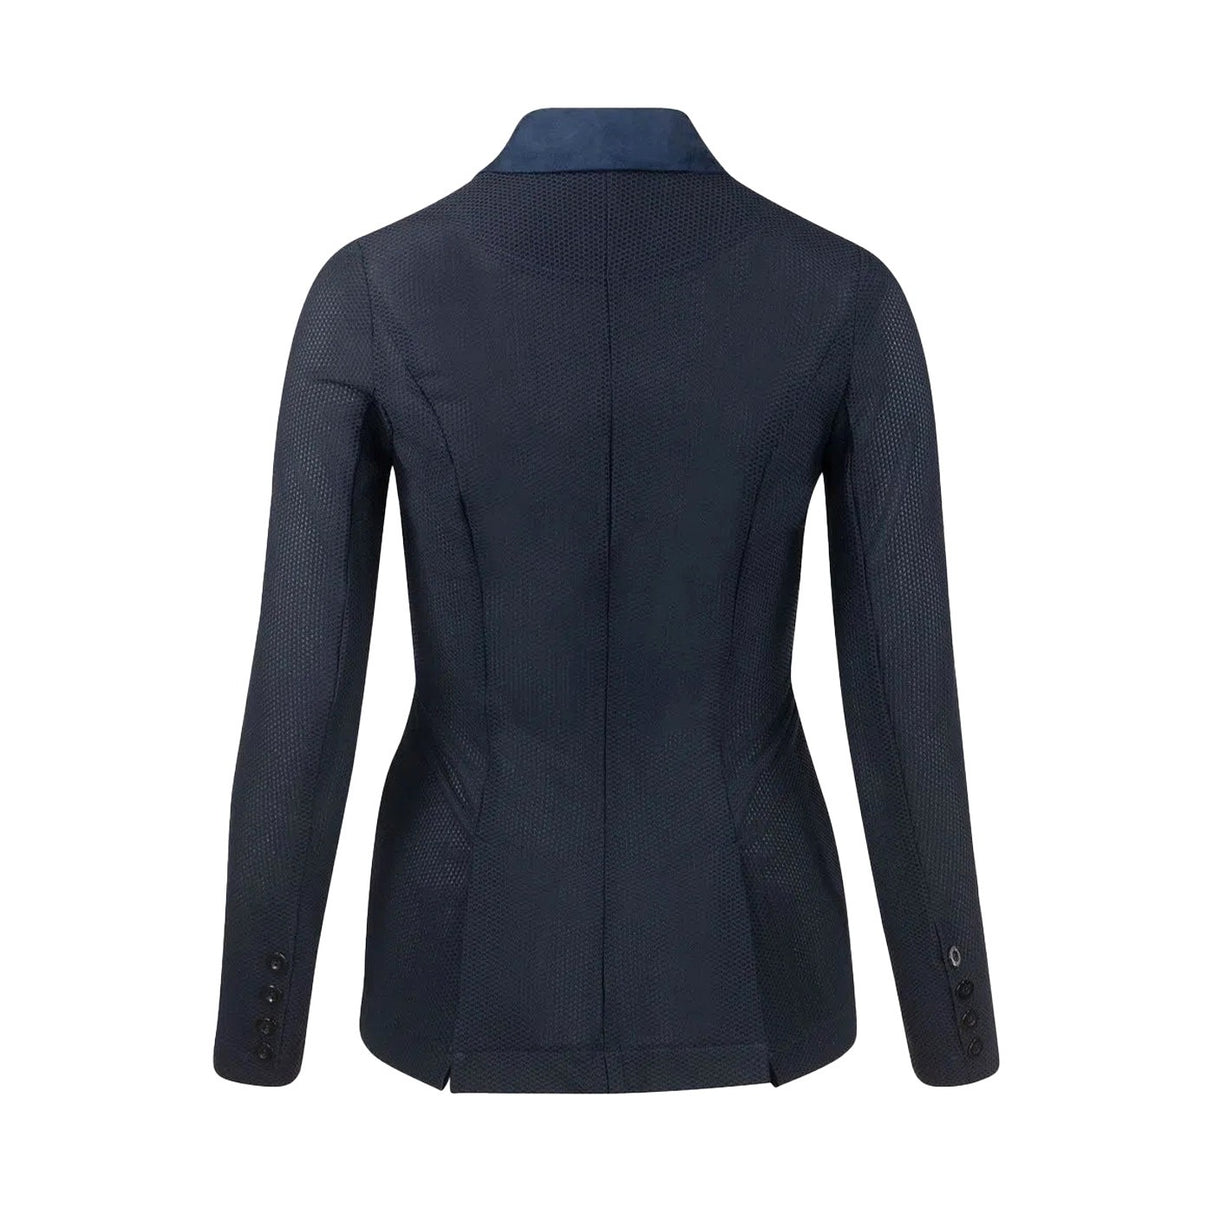 Buy B Vertigo Carina Women's Fleece Riding Jacket